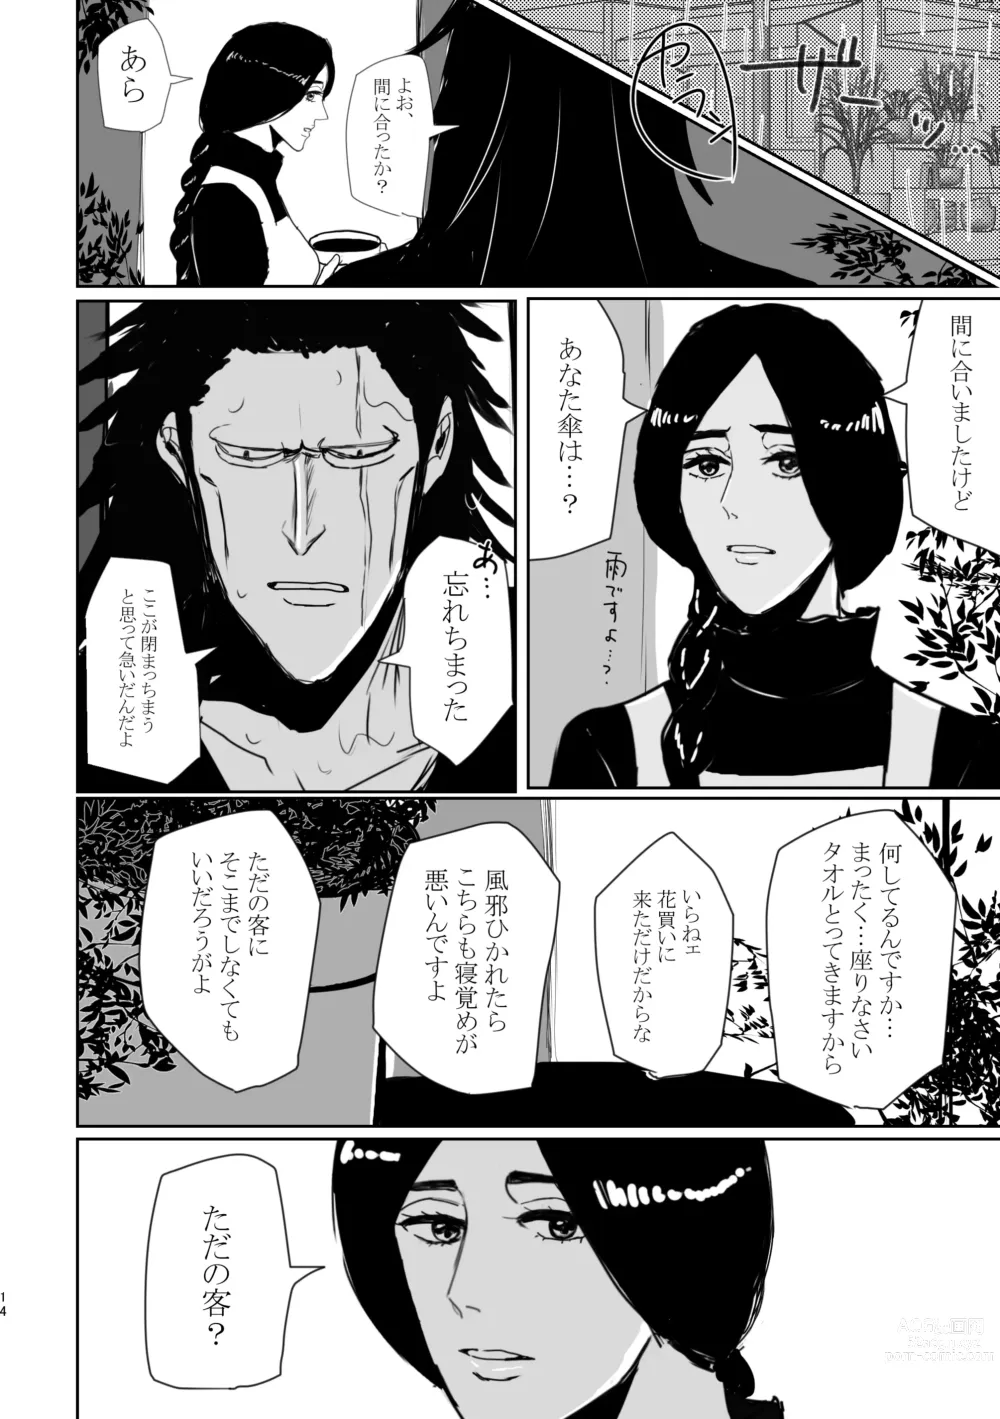 Page 7 of doujinshi Mebuki